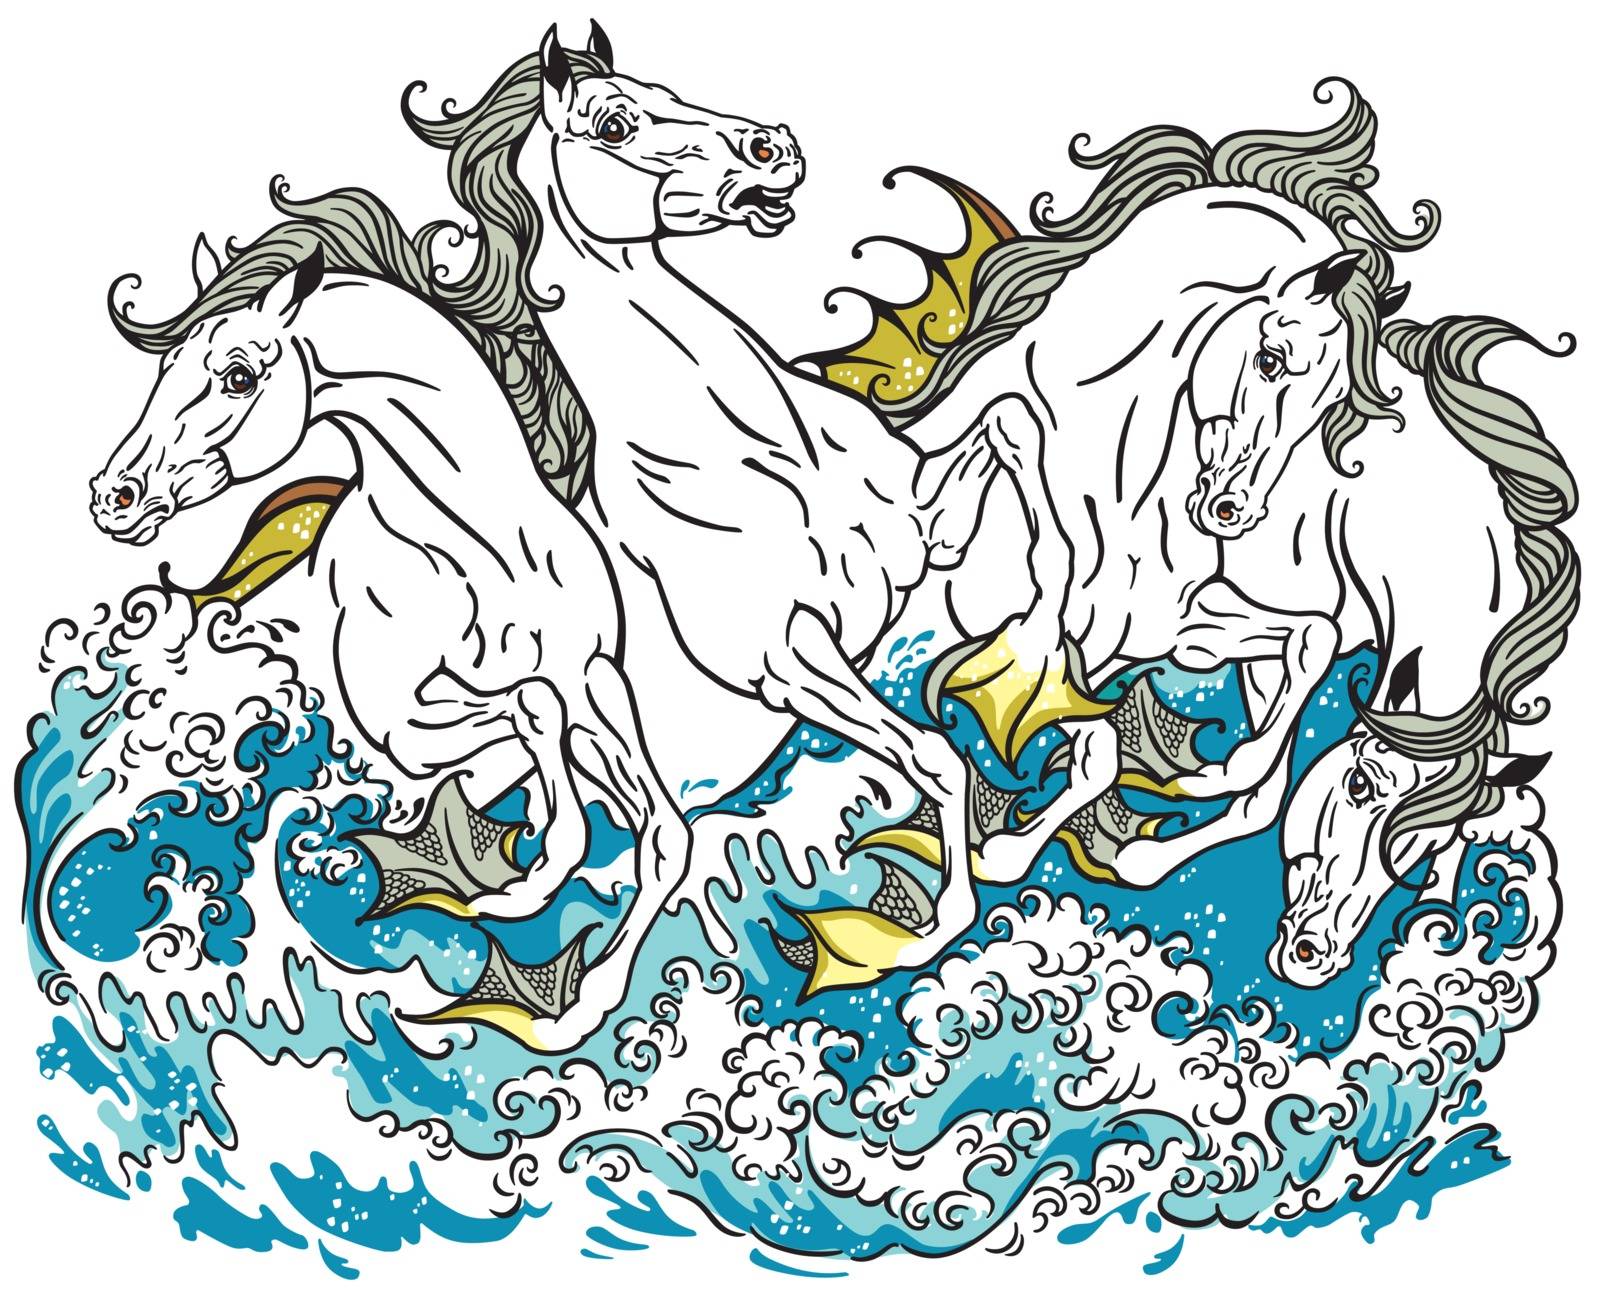 four mythological seahorses by insima